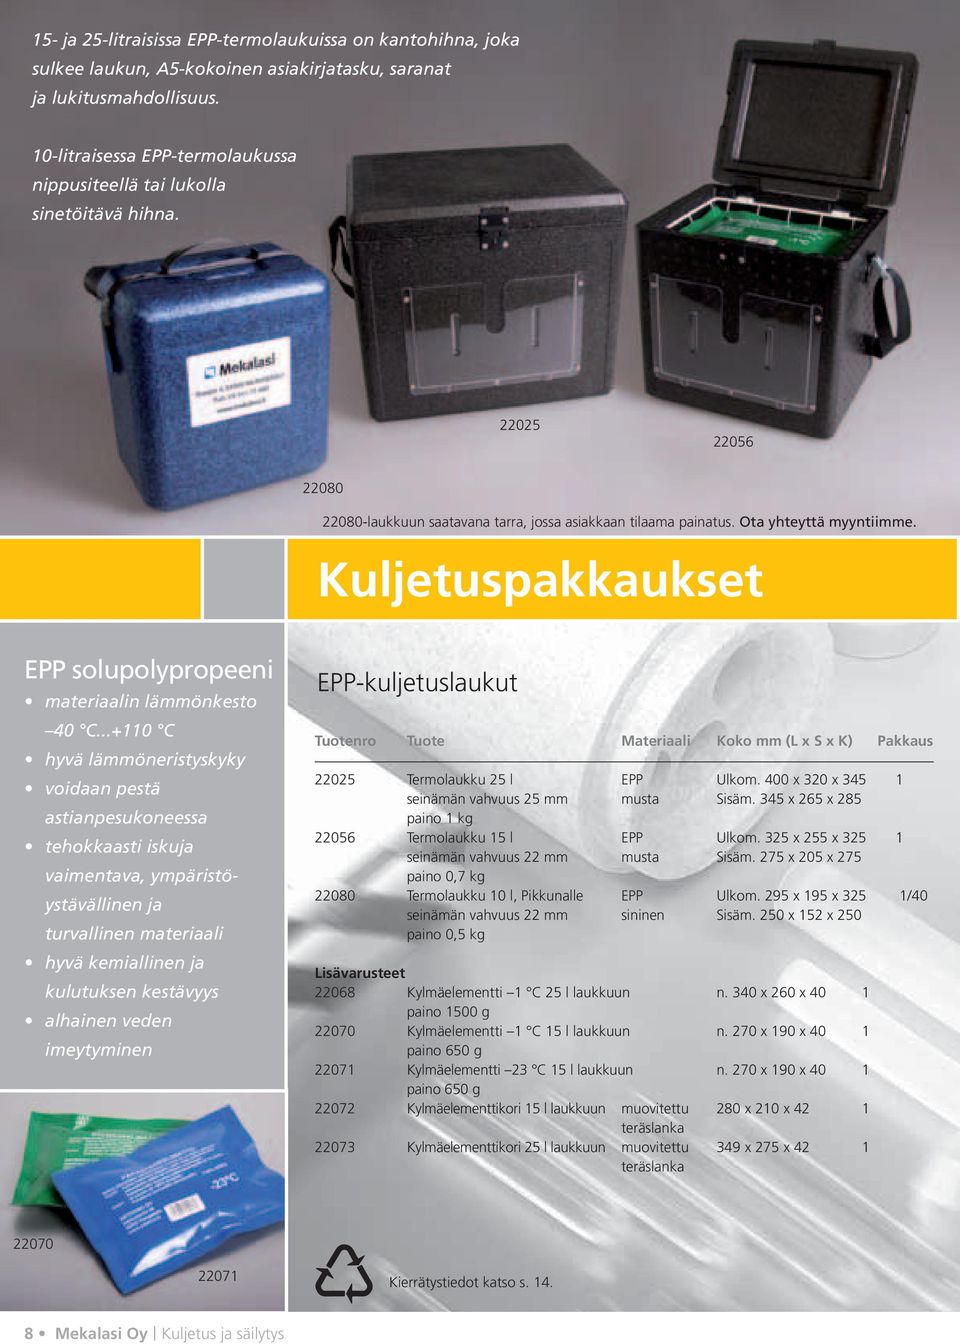 Kuljetuspakkaukset EPP solupolypropeeni materiaalin lämmönkesto 40 C.